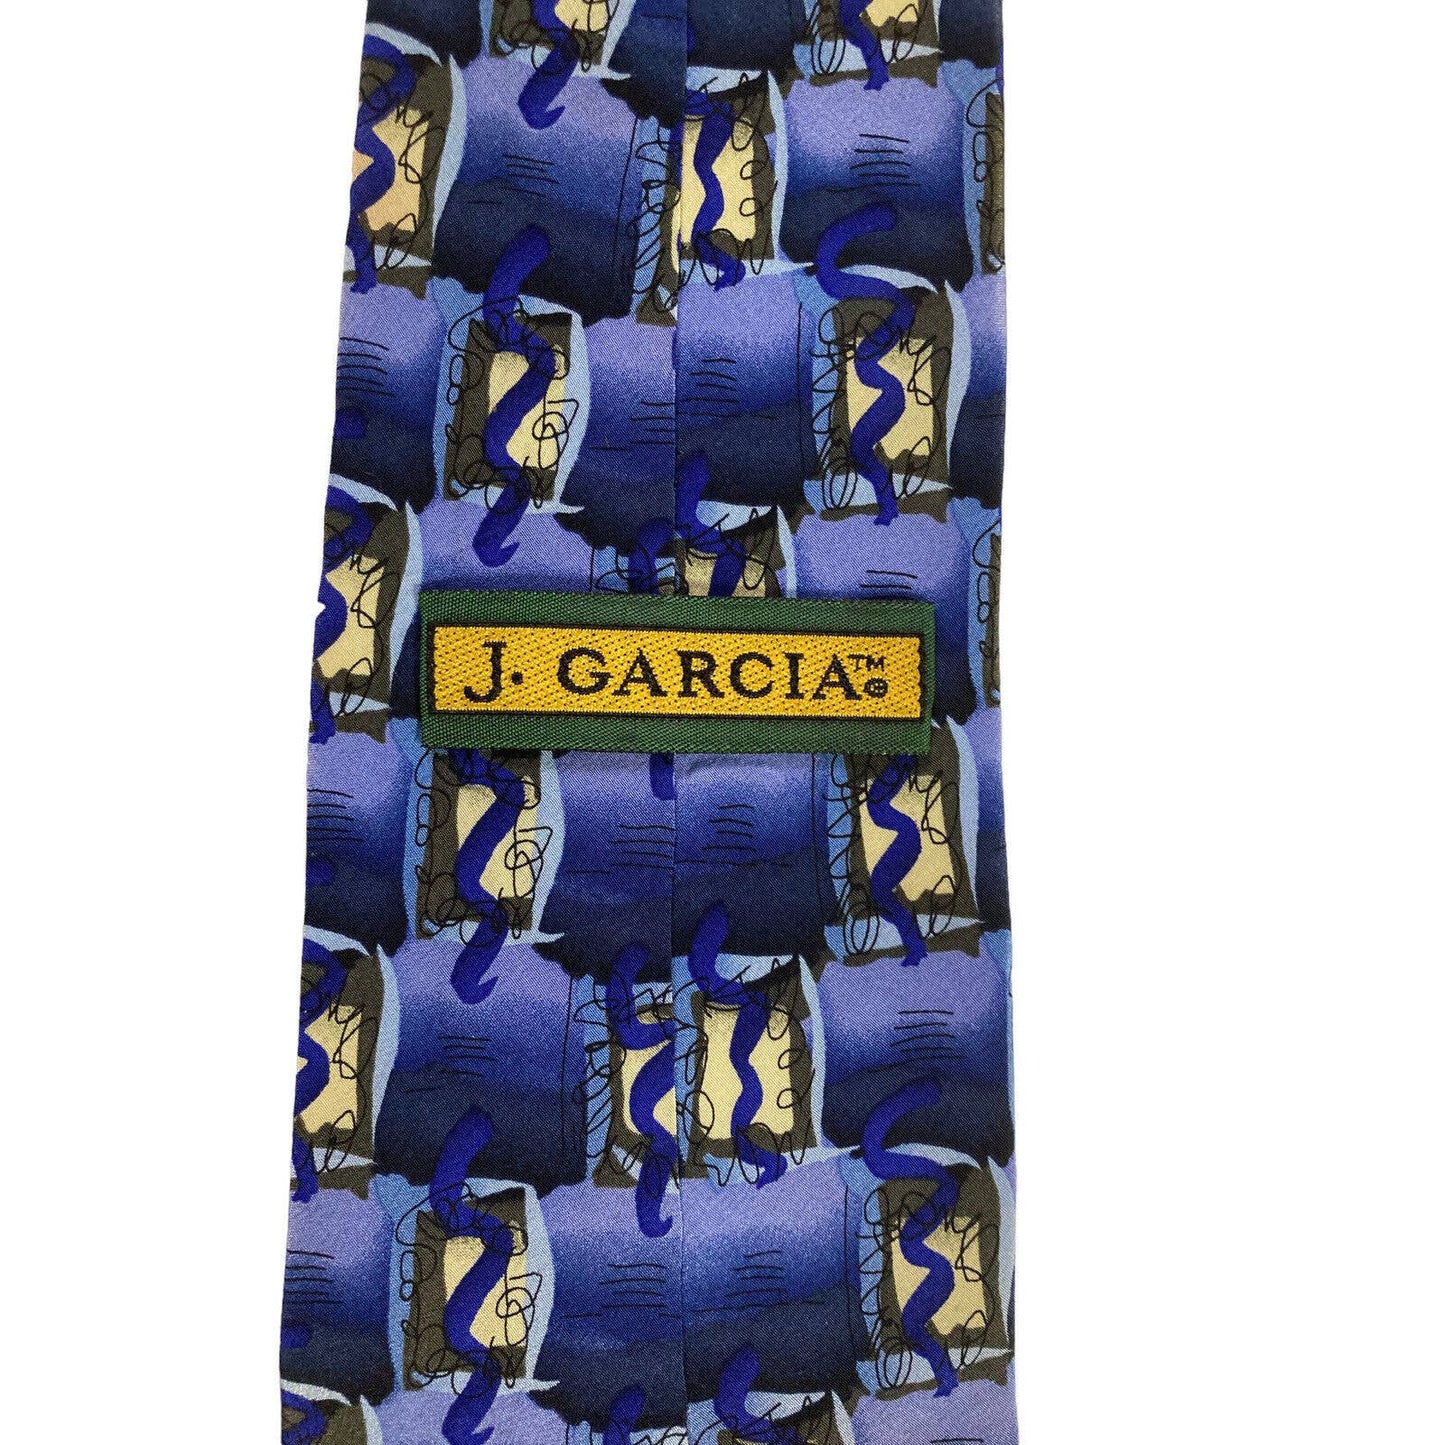 J Garcia Overlooking The Desert Collection Fifteen Vintage 1996 Novelty Necktie